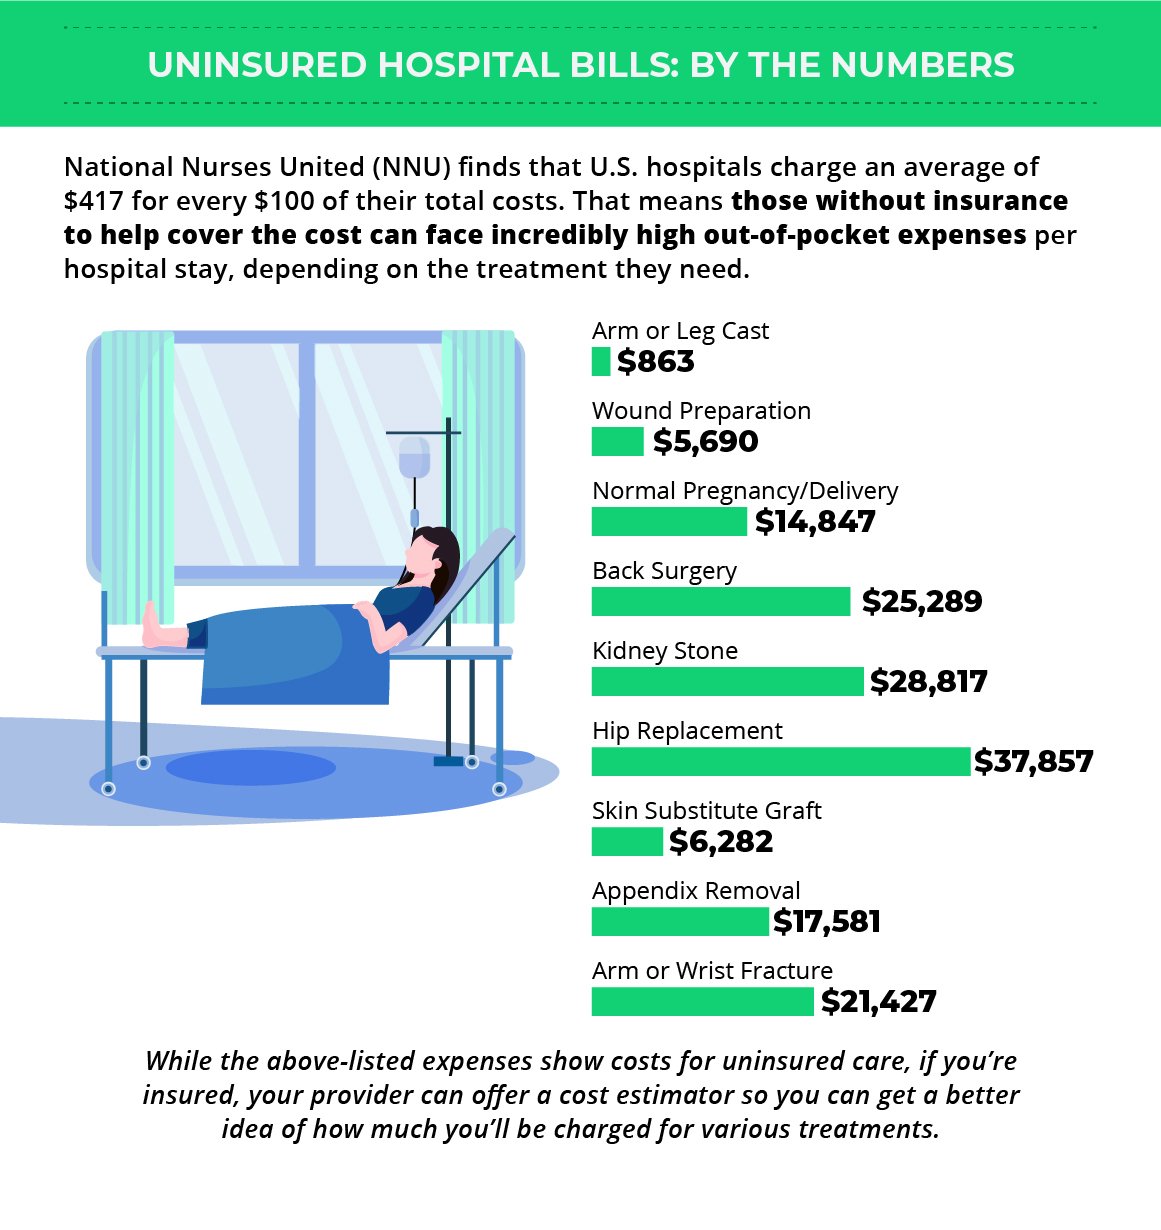 uninsured hospital bills, National Nurses United (NNU)